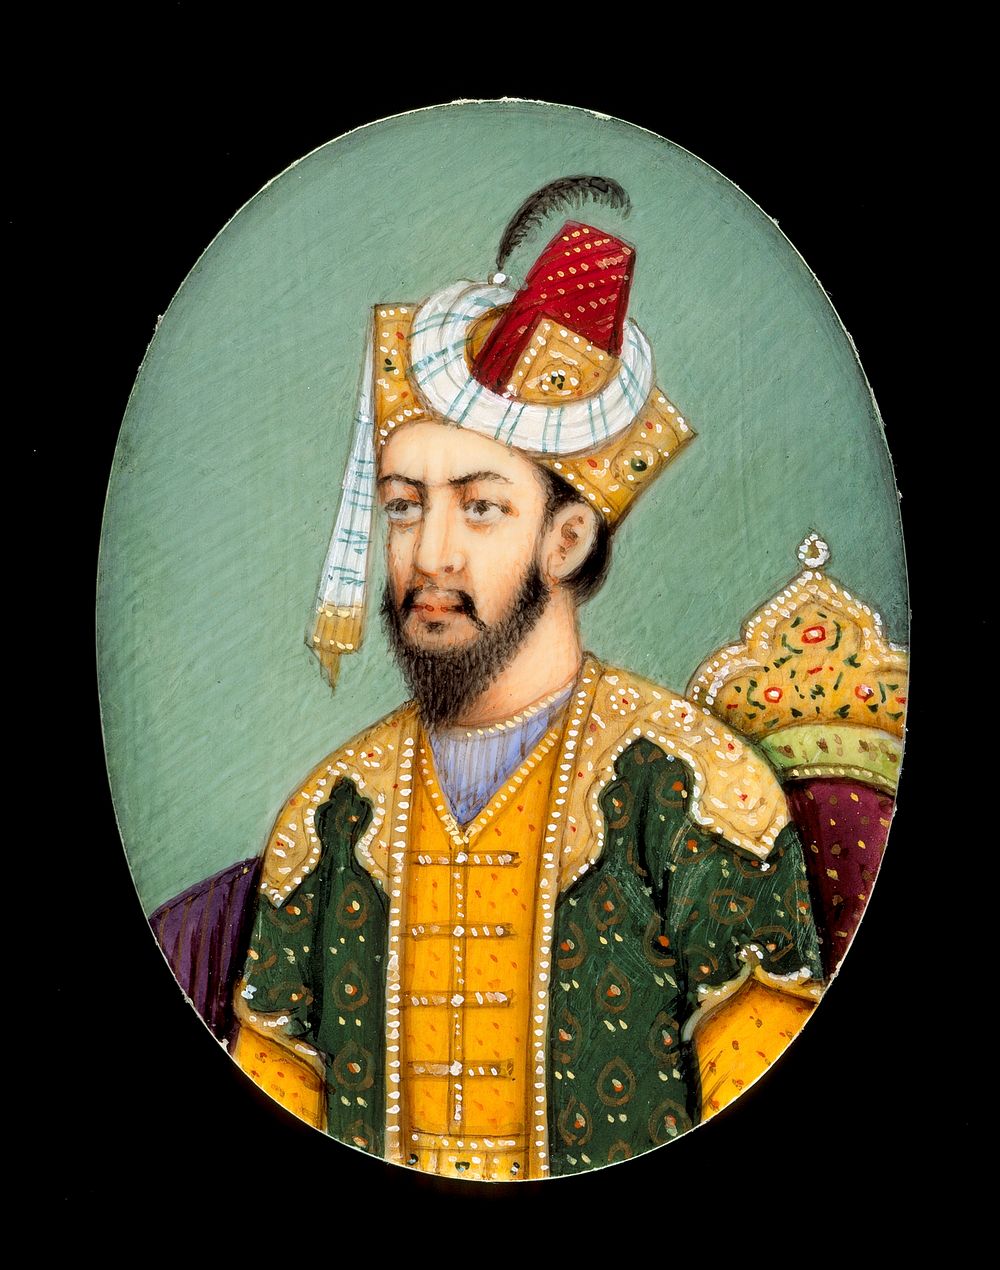 Emperor Humayun (r. 1530-1540/1555-1556)